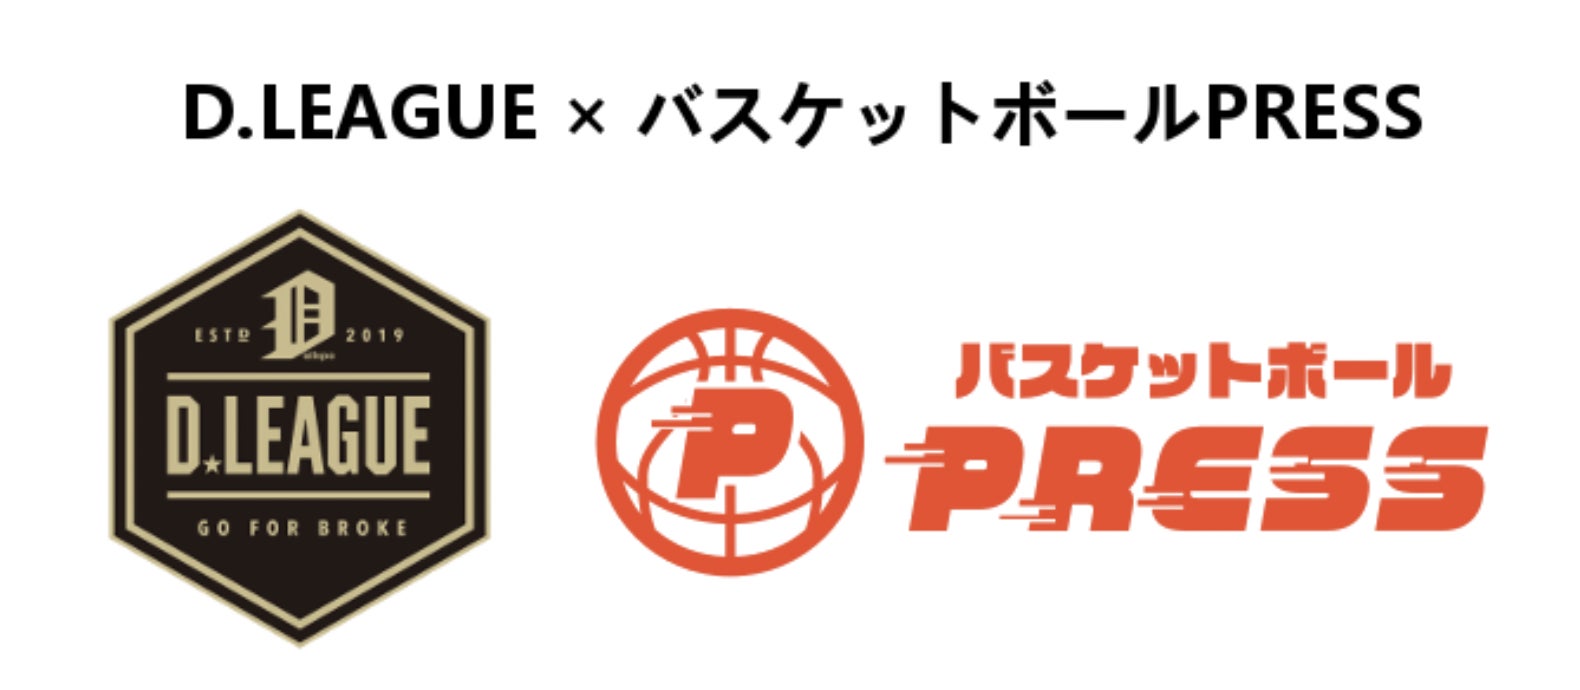 バスケットボールPRESS（通称「バスケプレス」）が、関東大学バスケットボール連盟デベロップメントリーグ（Dリーグ）公式メディアパートナーとして公式ページを開設致しました。